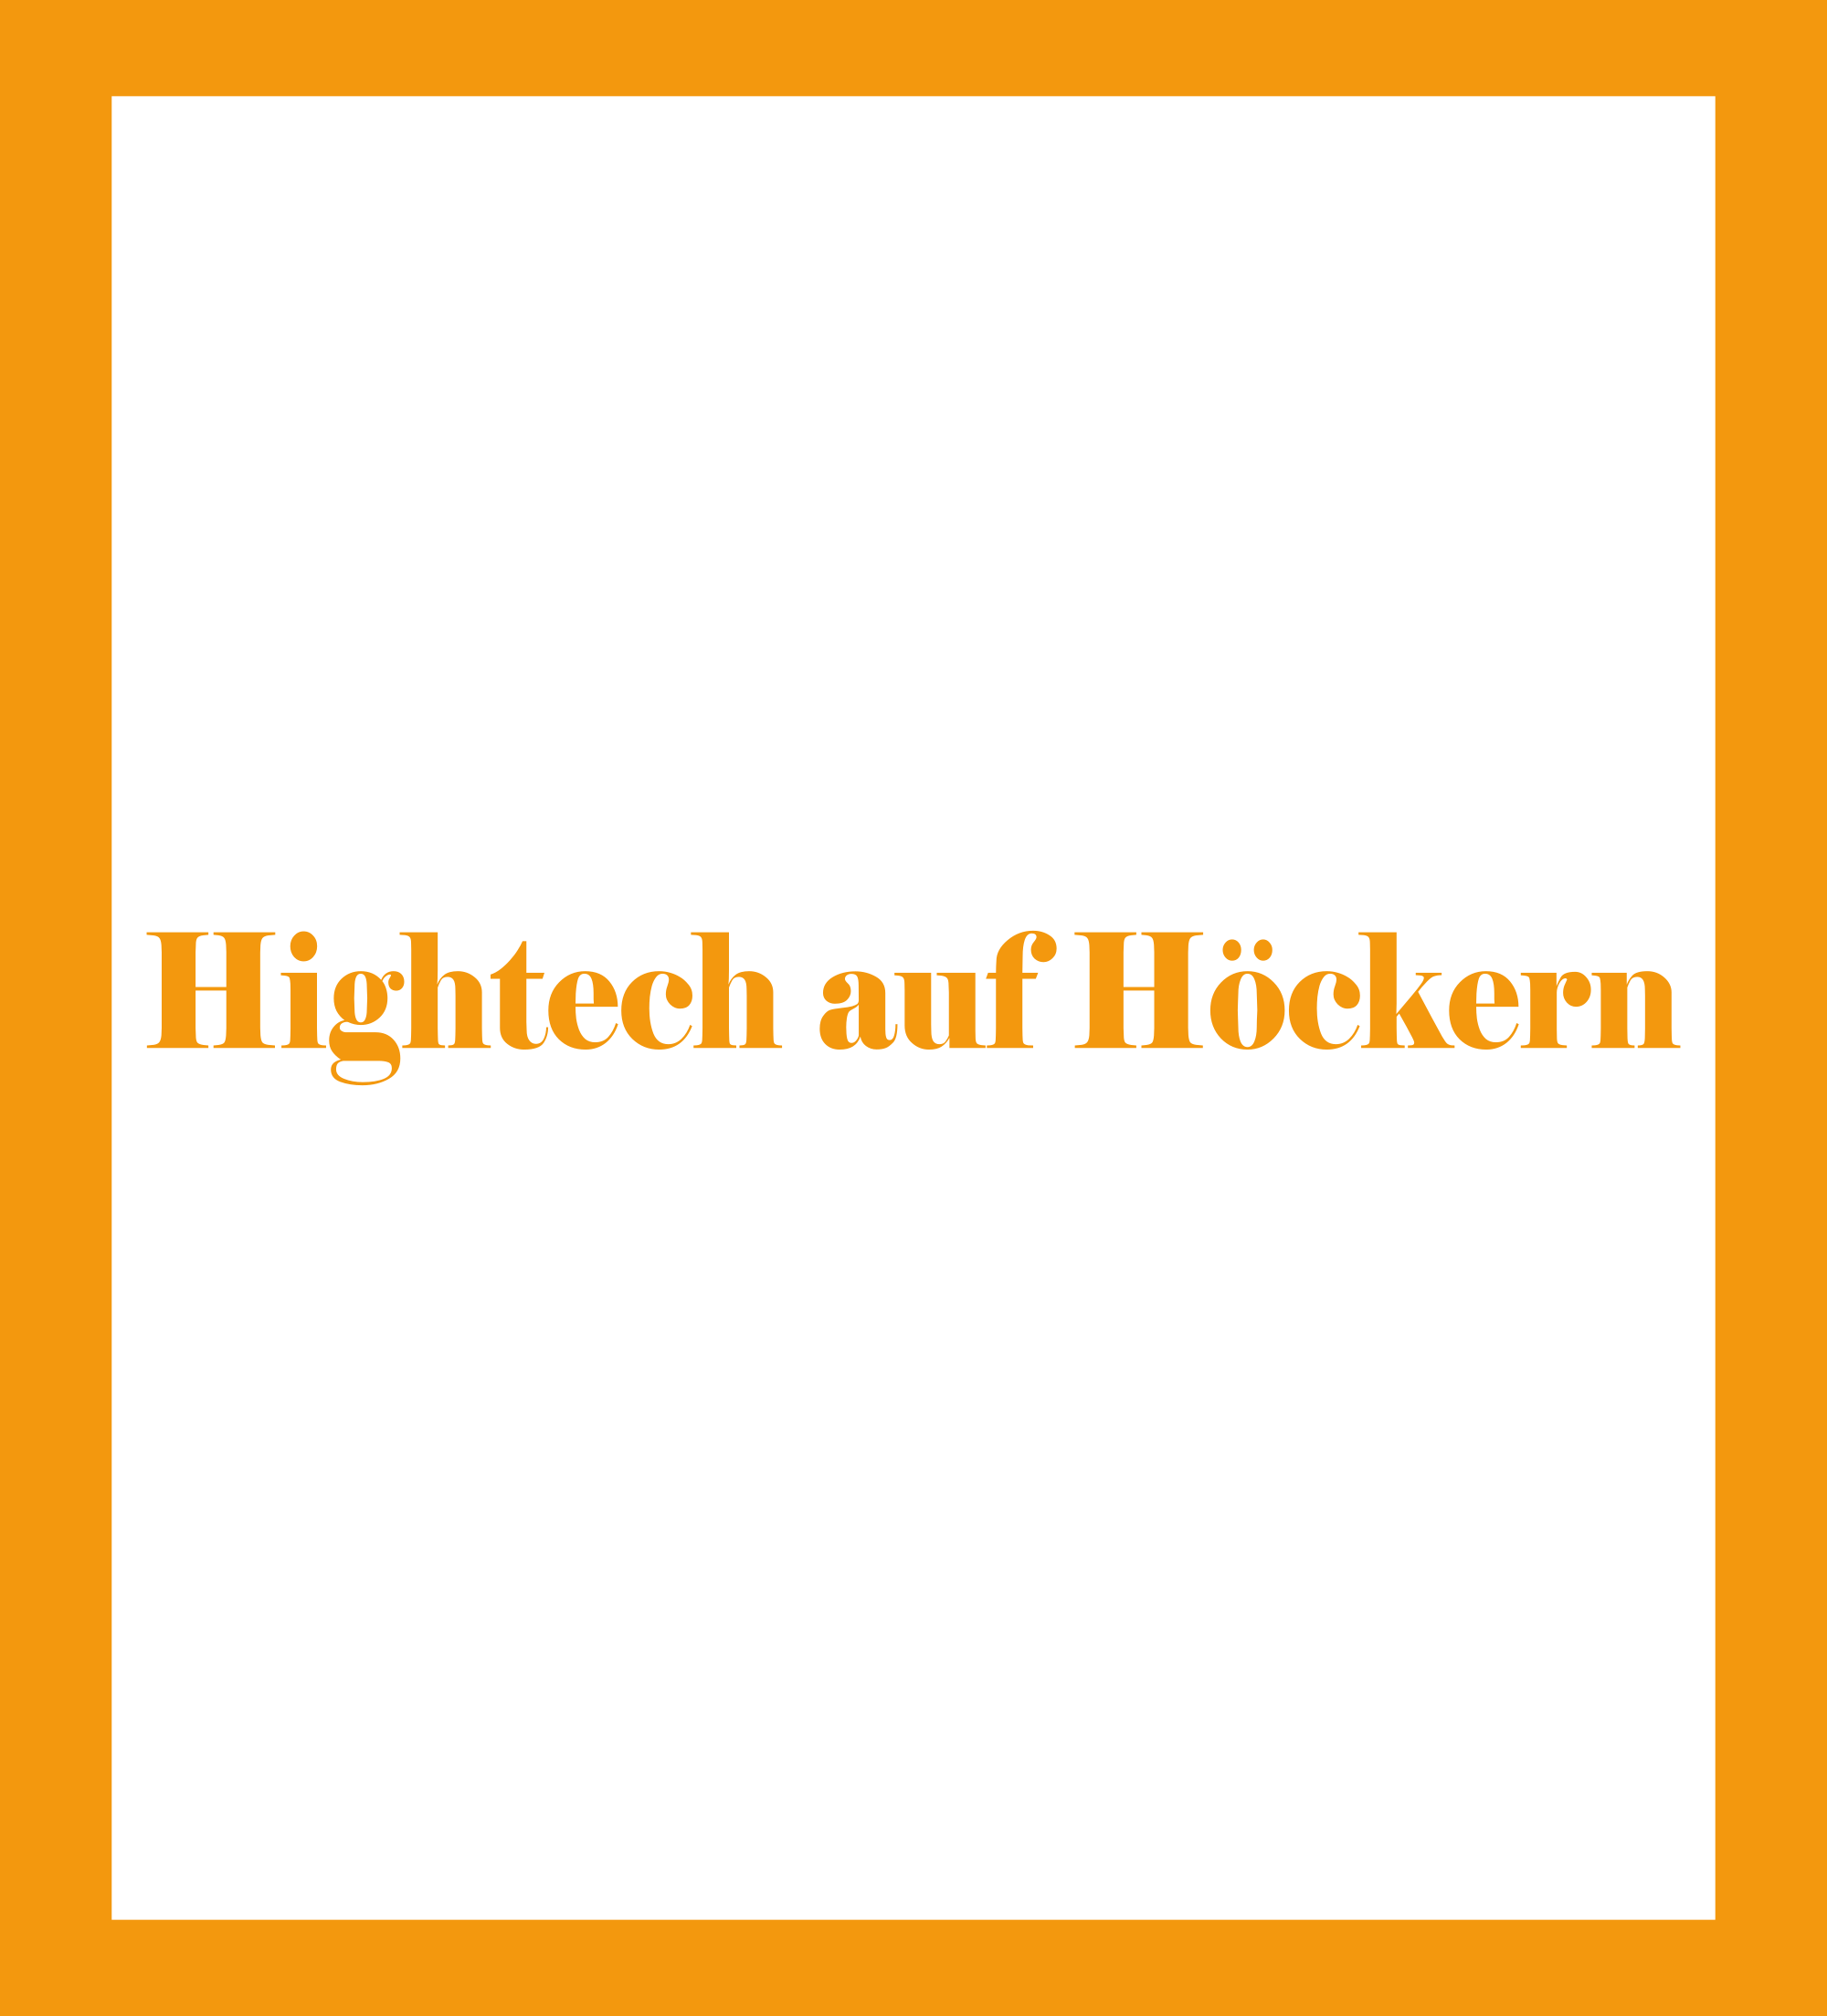 Caratula de Hightech auf Höckern (Robots al llom de camells) 